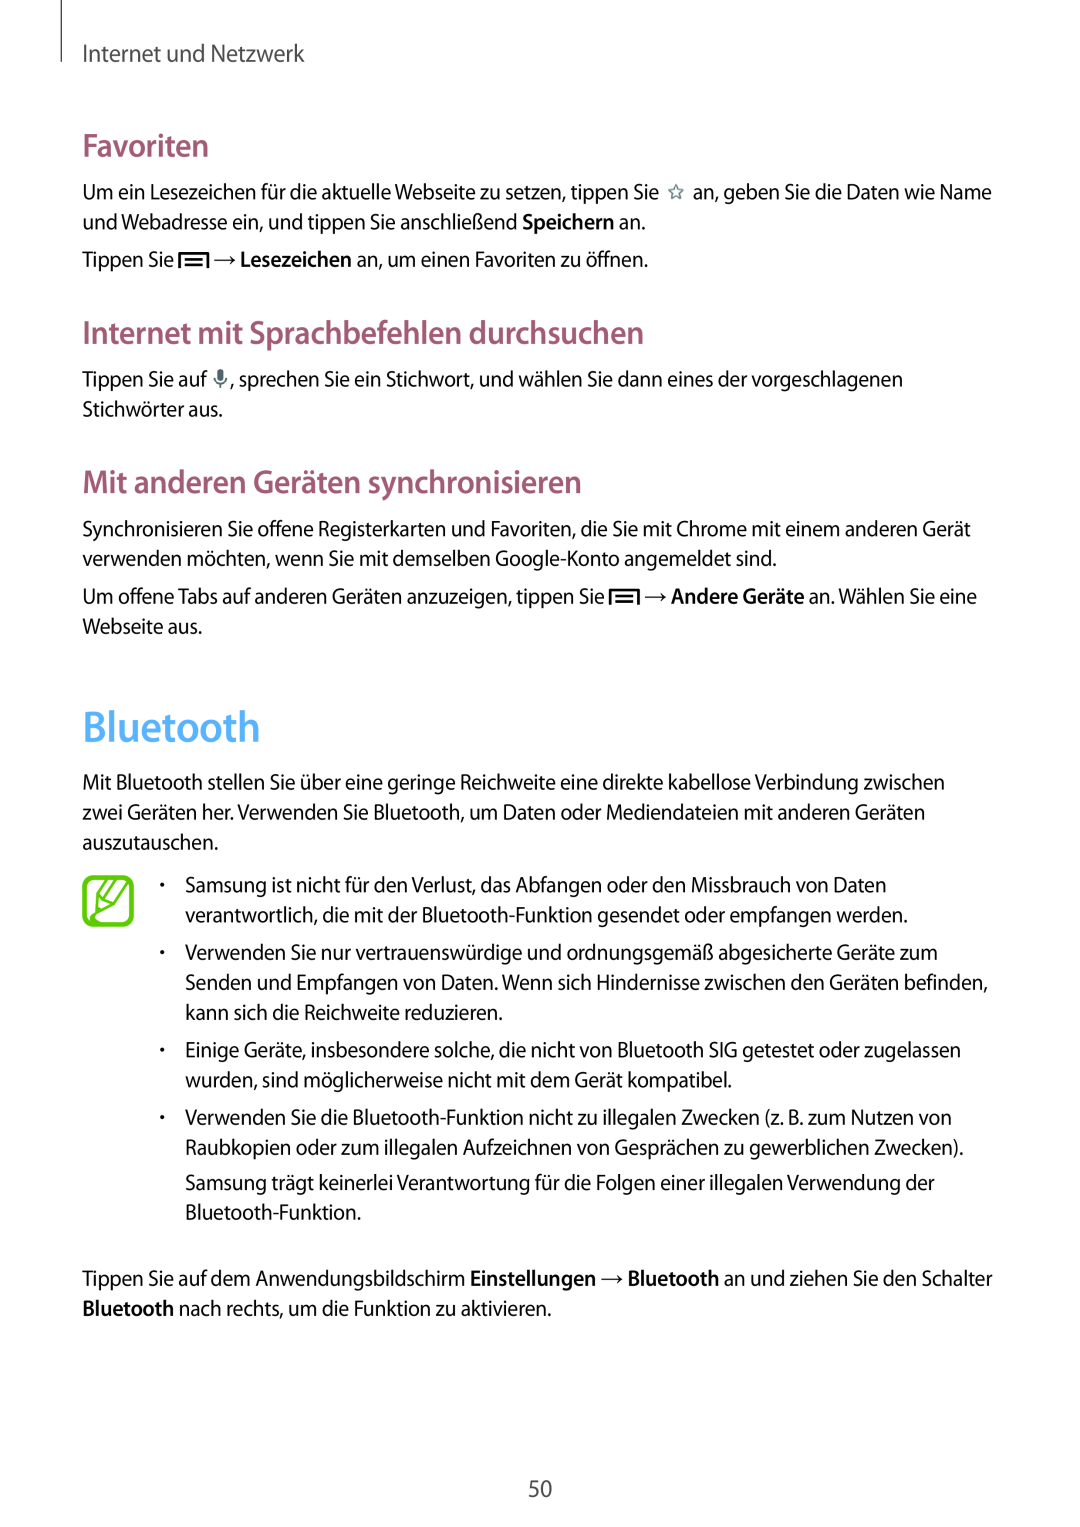 Samsung SM-T2100ZWZDBT Bluetooth, Mit anderen Geräten synchronisieren, Favoriten, Internet mit Sprachbefehlen durchsuchen 